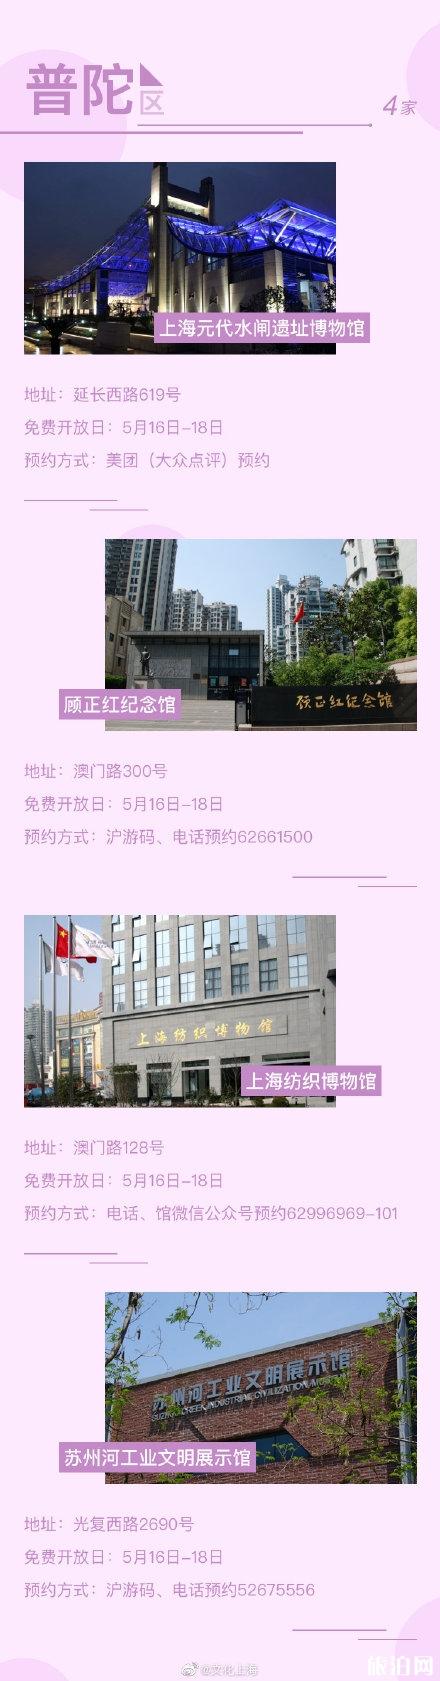 5月18日上海博物馆免费及半价开放名单